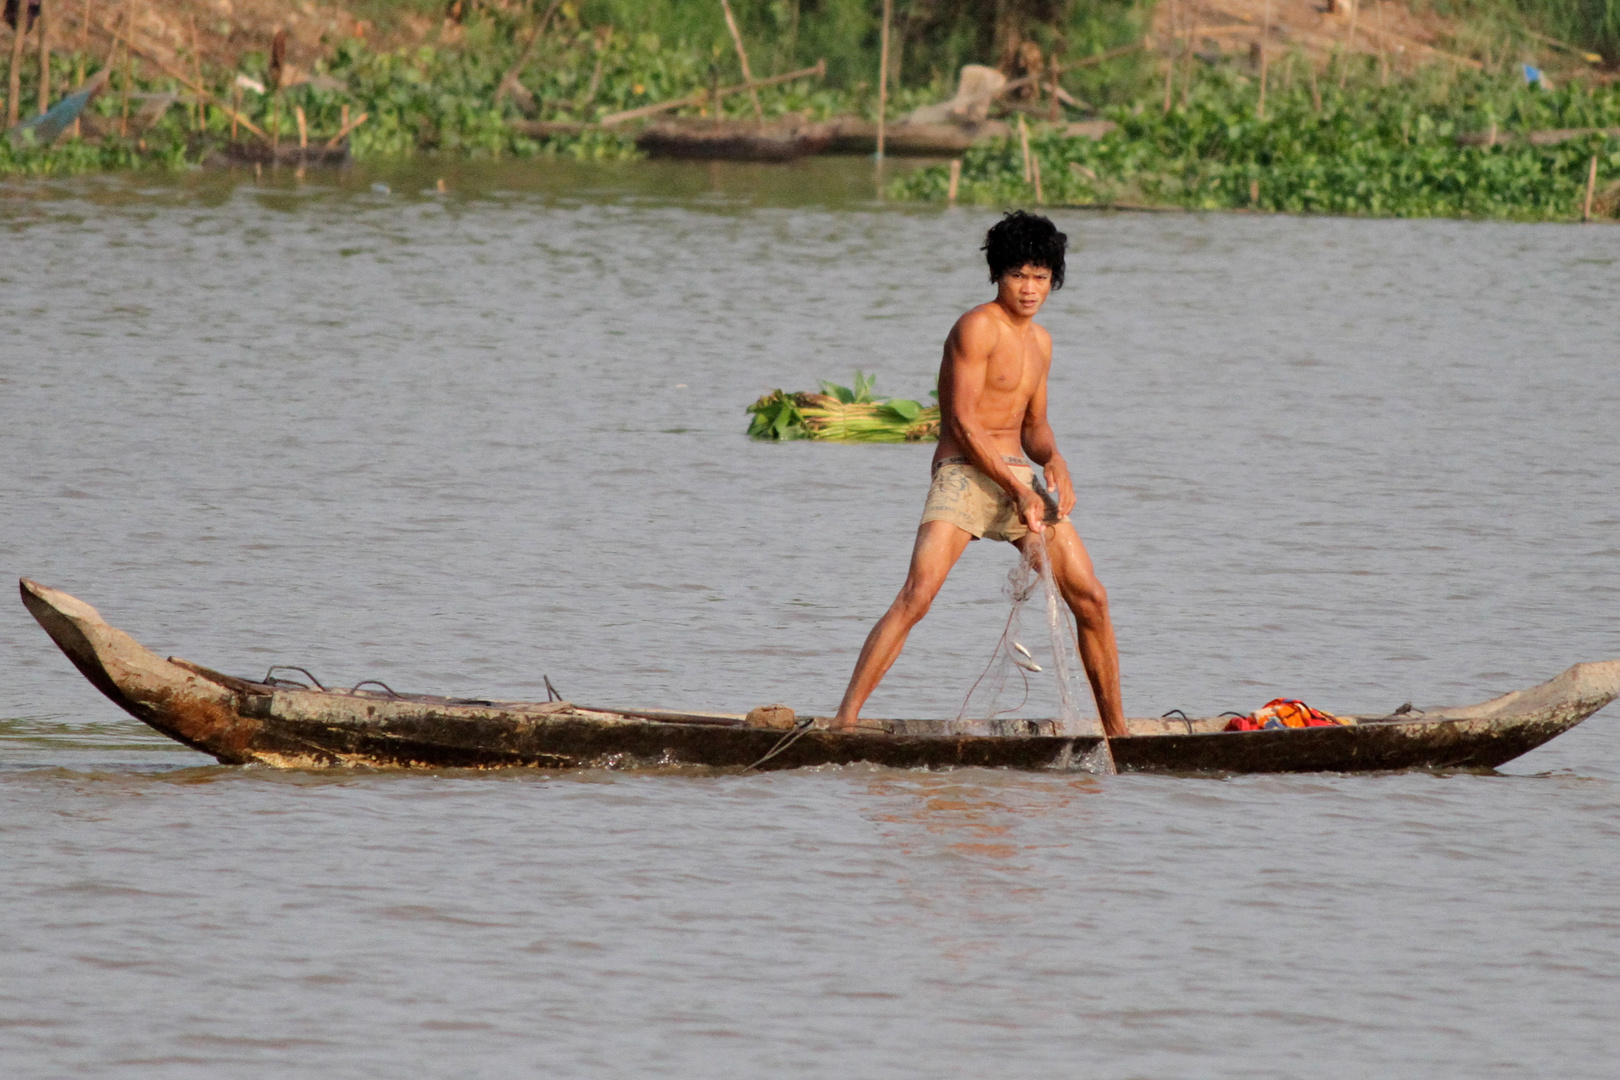 Mekong fishing